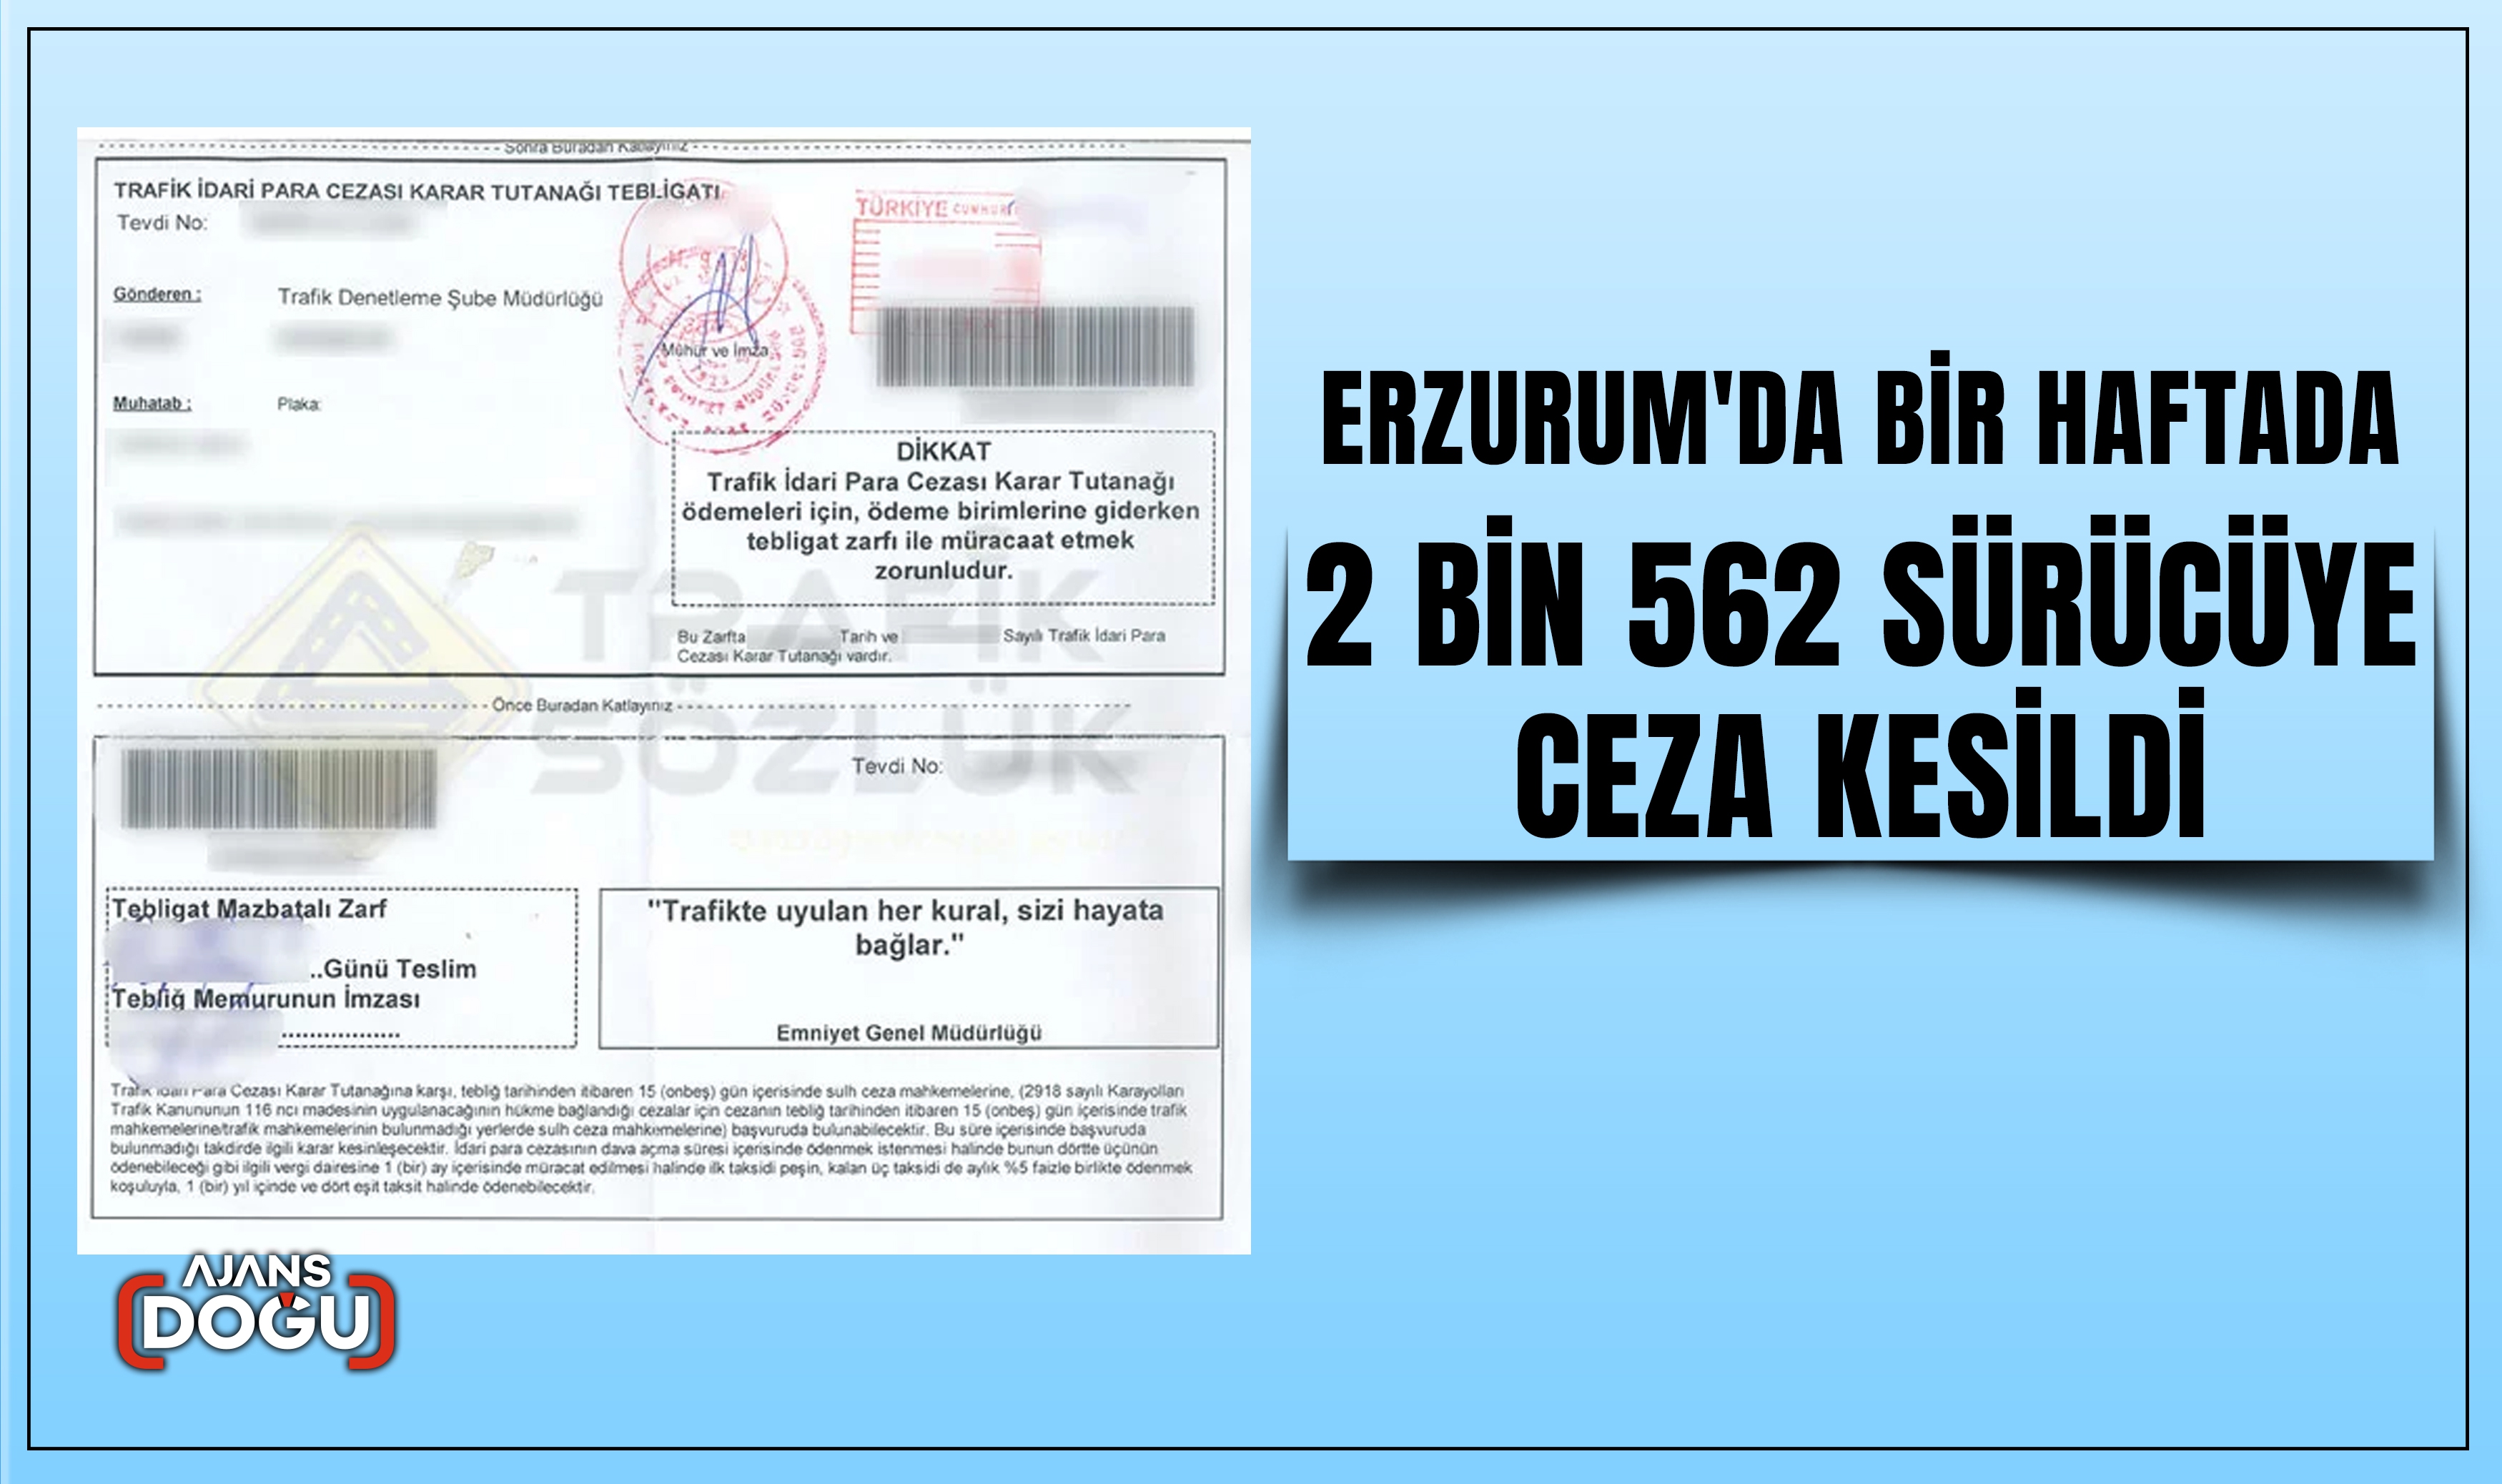 Erzurum'da bir haftada 2 bin 562 sürücüye ceza kesildi